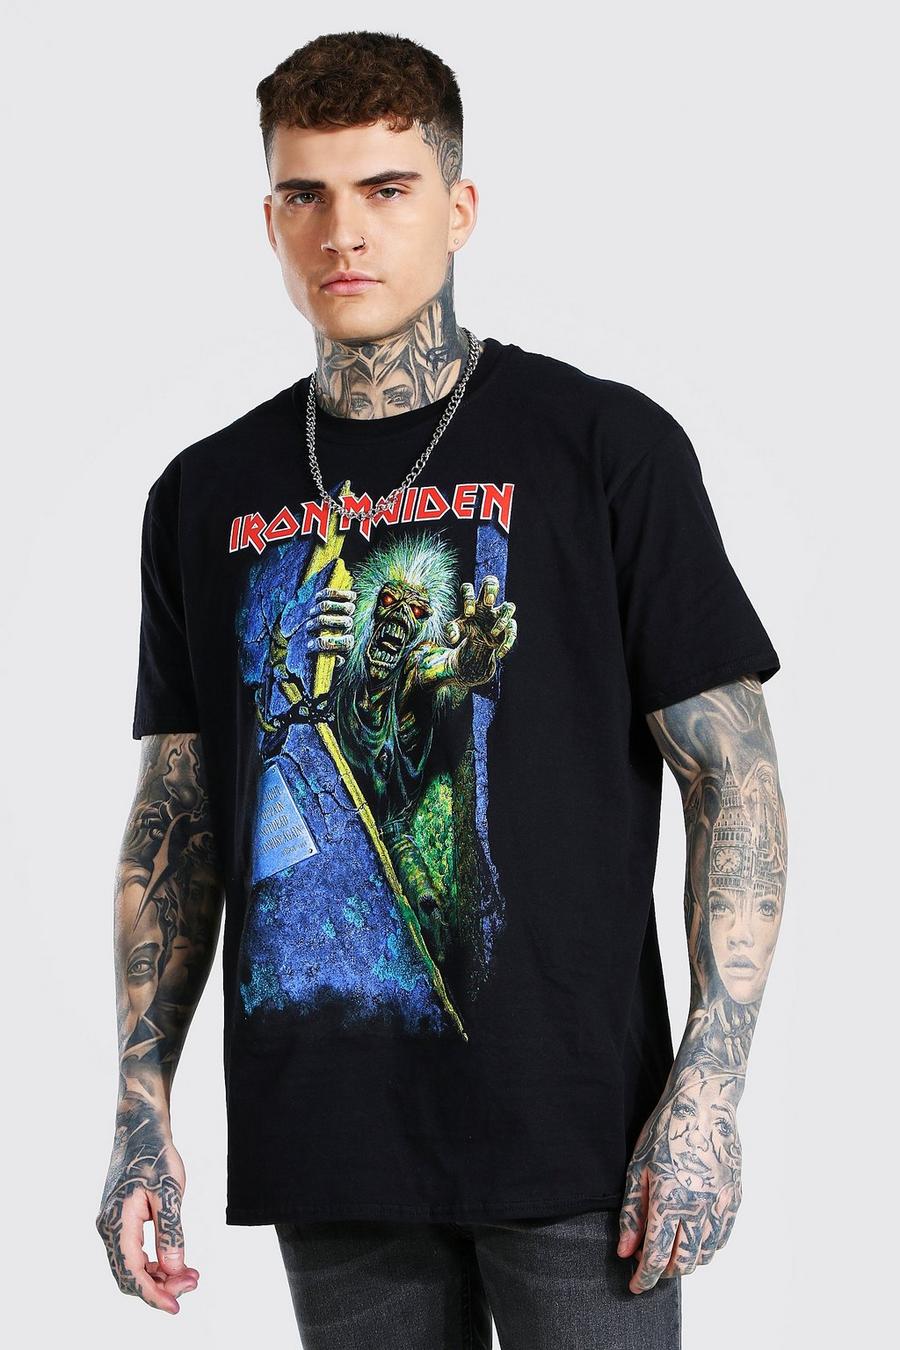 Abbigliamento Abbigliamento genere neutro per adulti Top e magliette T-shirt T-shirt con disegni 90's Iron Maiden Fear Of The Dark Shirt Uomo XL 